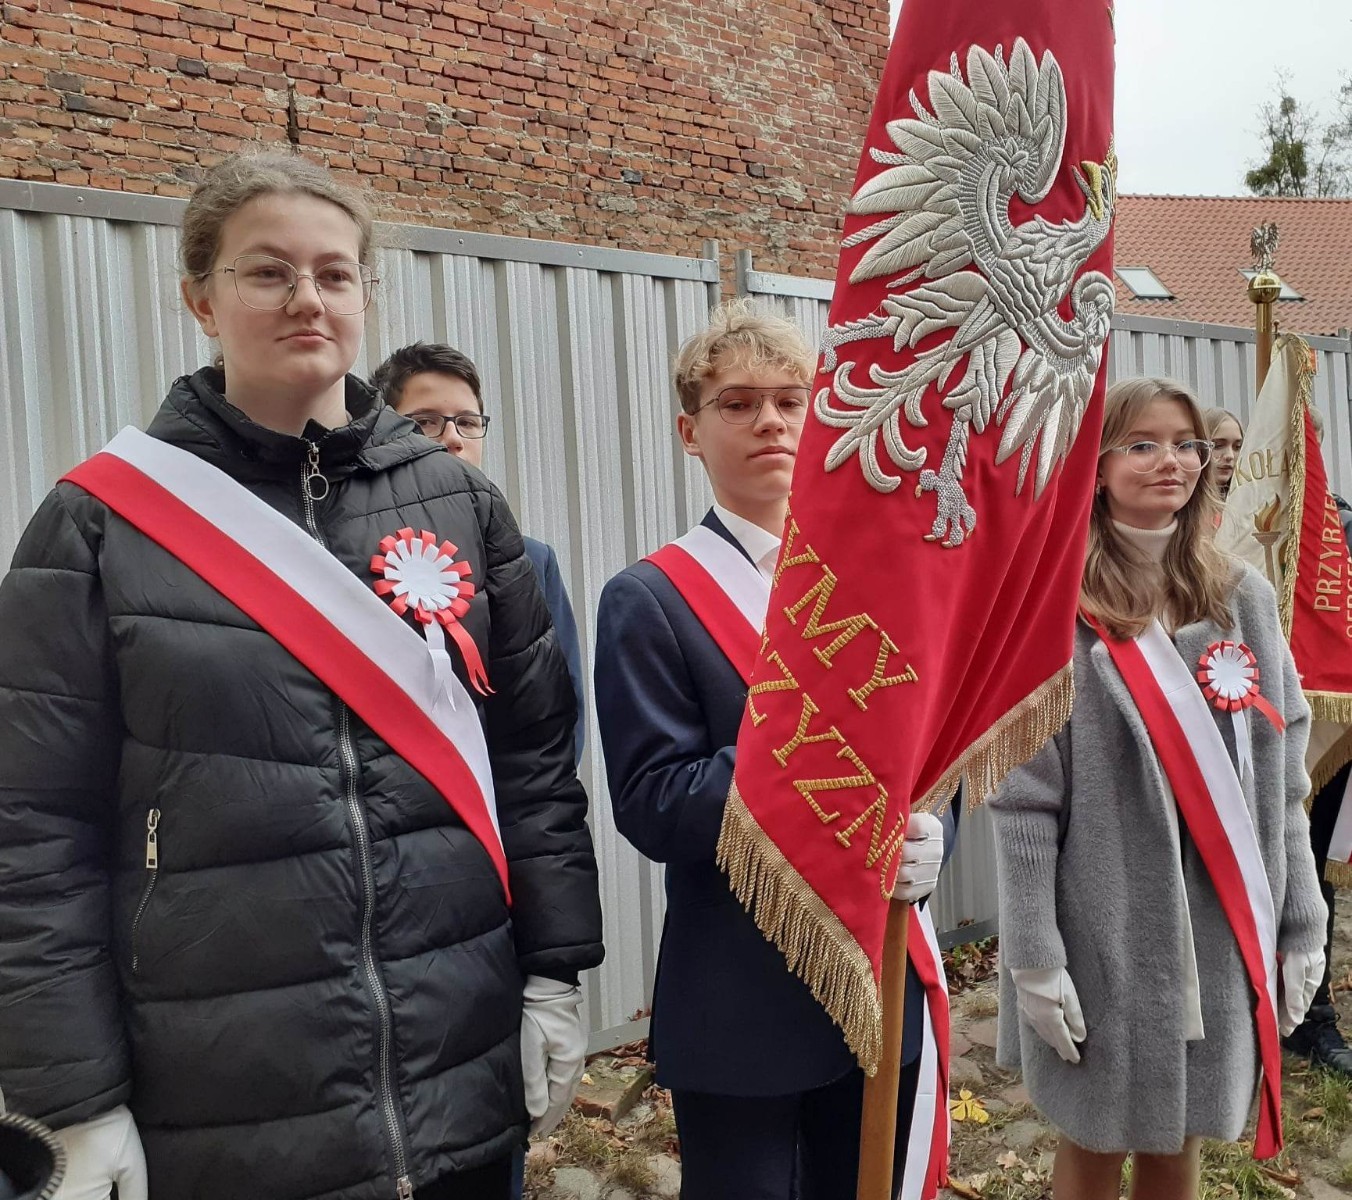 11 listopada obchodzimy święto państwowe, które upamiętnia odzyskanie niepodległości przez Polskę. Po zakończeniu I wojny światowej w 1918 r. Rzeczpospolita Polska stała się ponownie państwem suwerennym. Wraz z odzyskaniem niepodległości odrodziła się wiara i nadzieja na lepsze jutro. 
Uroczyste obchody Narodowego Święta Niepodległości w naszym mieście rozpoczęły się mszą świętą za Ojczyznę w kościele św. Bartłomieja, w której uczestniczyli przedstawiciele władz miasta i gminy na czele z panem Burmistrzem Wiesławem Śniecikowskim, poczty sztandarowe wszystkich szkół, ważnych instytucji i wielu środowisk, a także zaproszeni goście. Następnie odbył się pochód patriotyczny ulicami miasta z 50 metrową flagą Polski pod pomnik 100-Lecia Odzyskania Niepodległości przez Polskę. 
